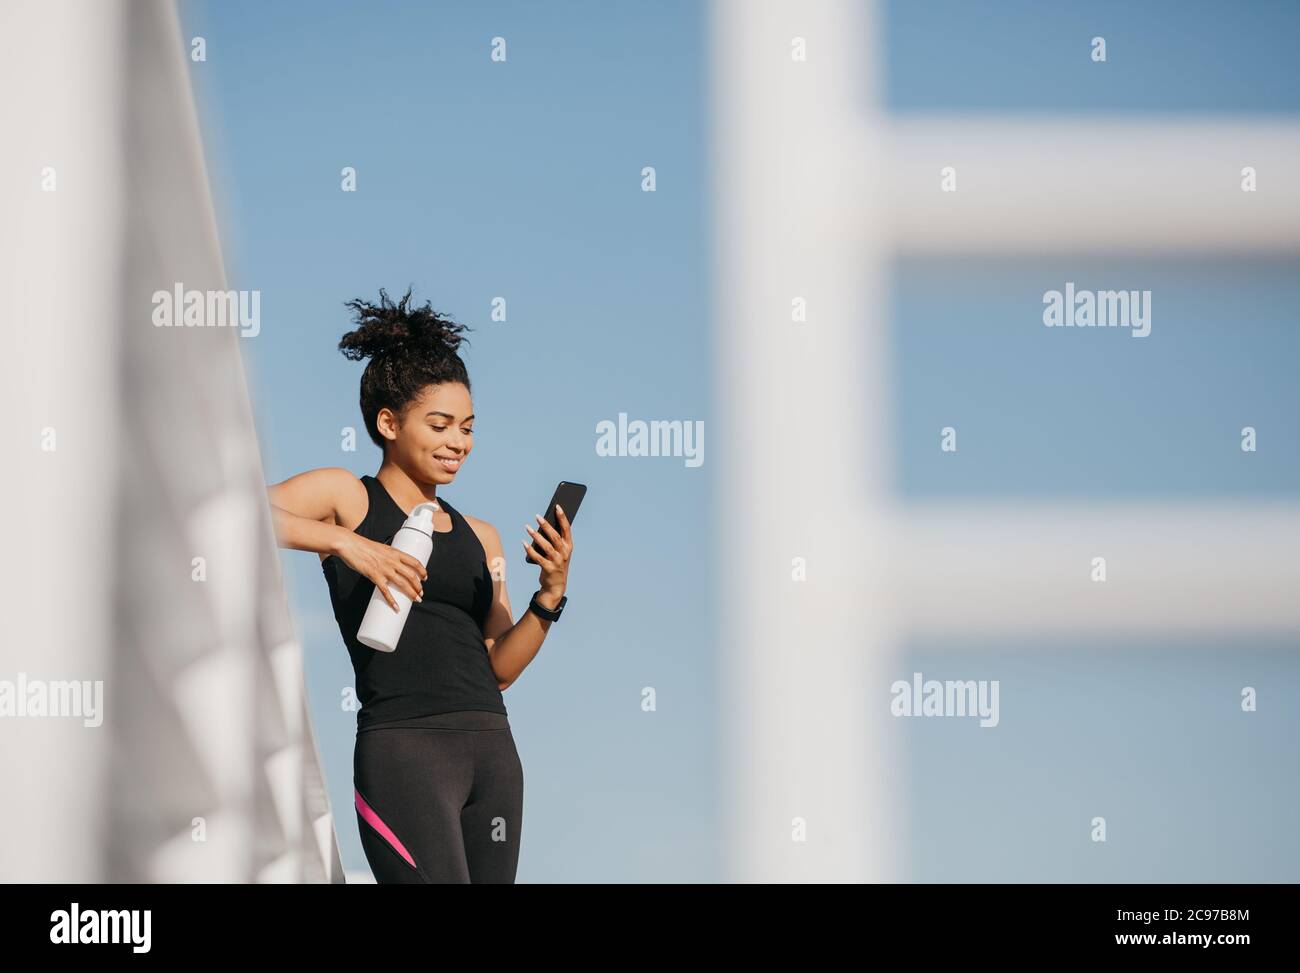 Social media e sport. Donna sorridente in abbigliamento sportivo di moda che tiene una bottiglia d'acqua e guarda lo smartphone Foto Stock